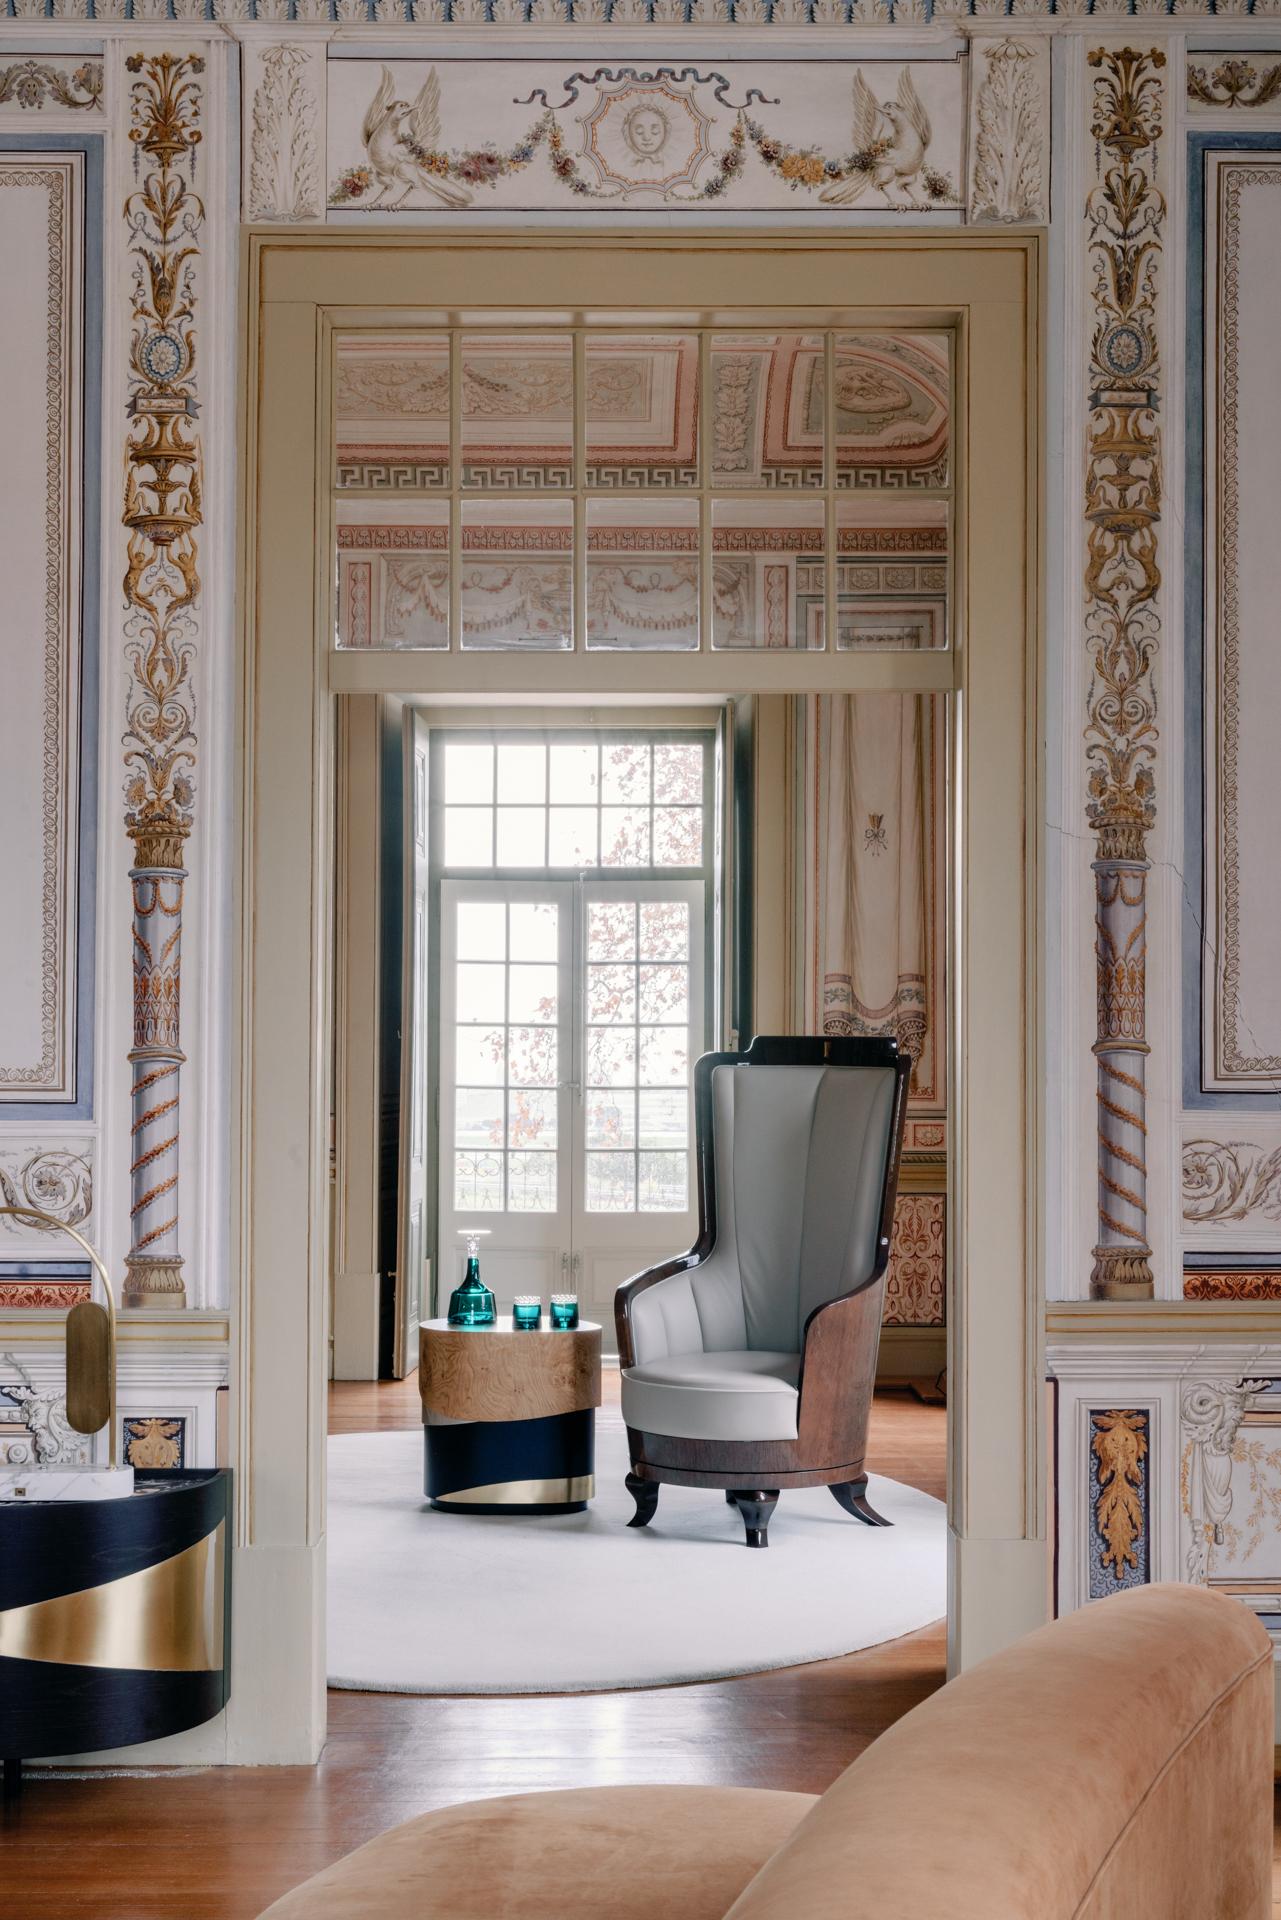 Fernando Sessel, Modern Collection'S, handgefertigt in Portugal - Europa von GF Modern.

Fernando wurde entwickelt, um maximalen Komfort zu gewährleisten und außergewöhnliche Handwerkskunst zu liefern. Der Sessel mit hoher Holzlehne und rundem